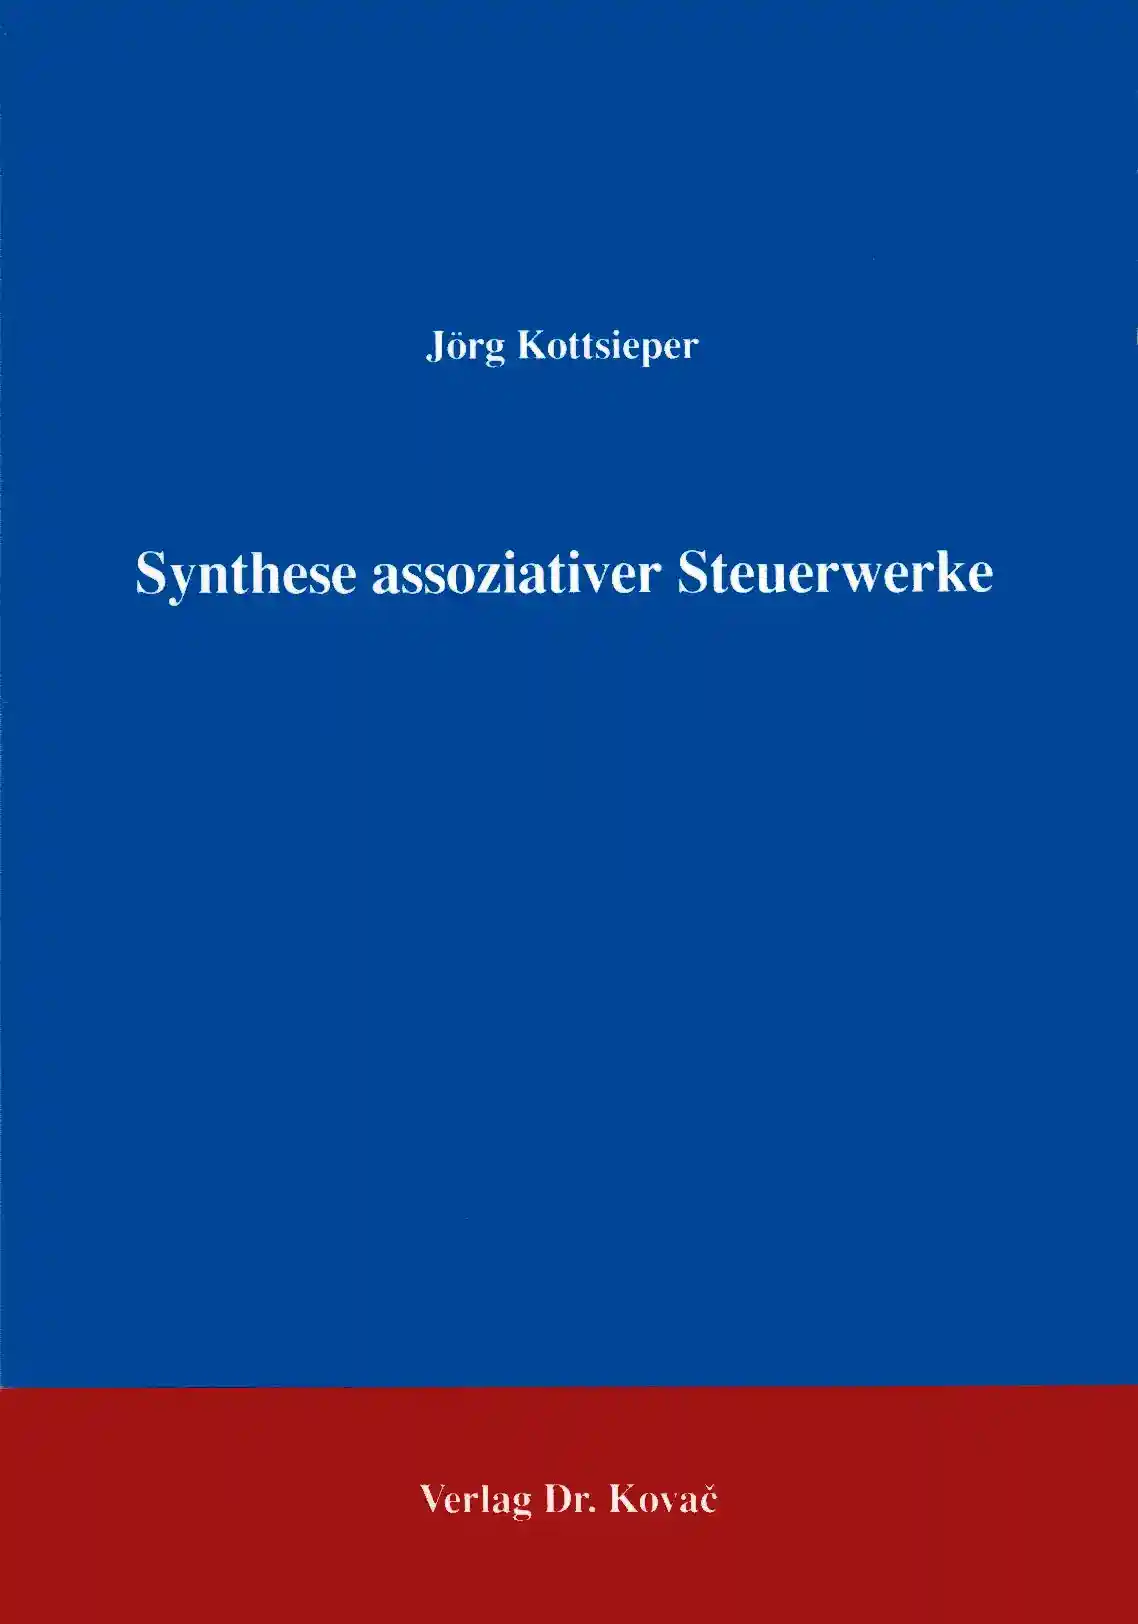 Synthese assoziativer Steuerwerke (Forschungsarbeit)